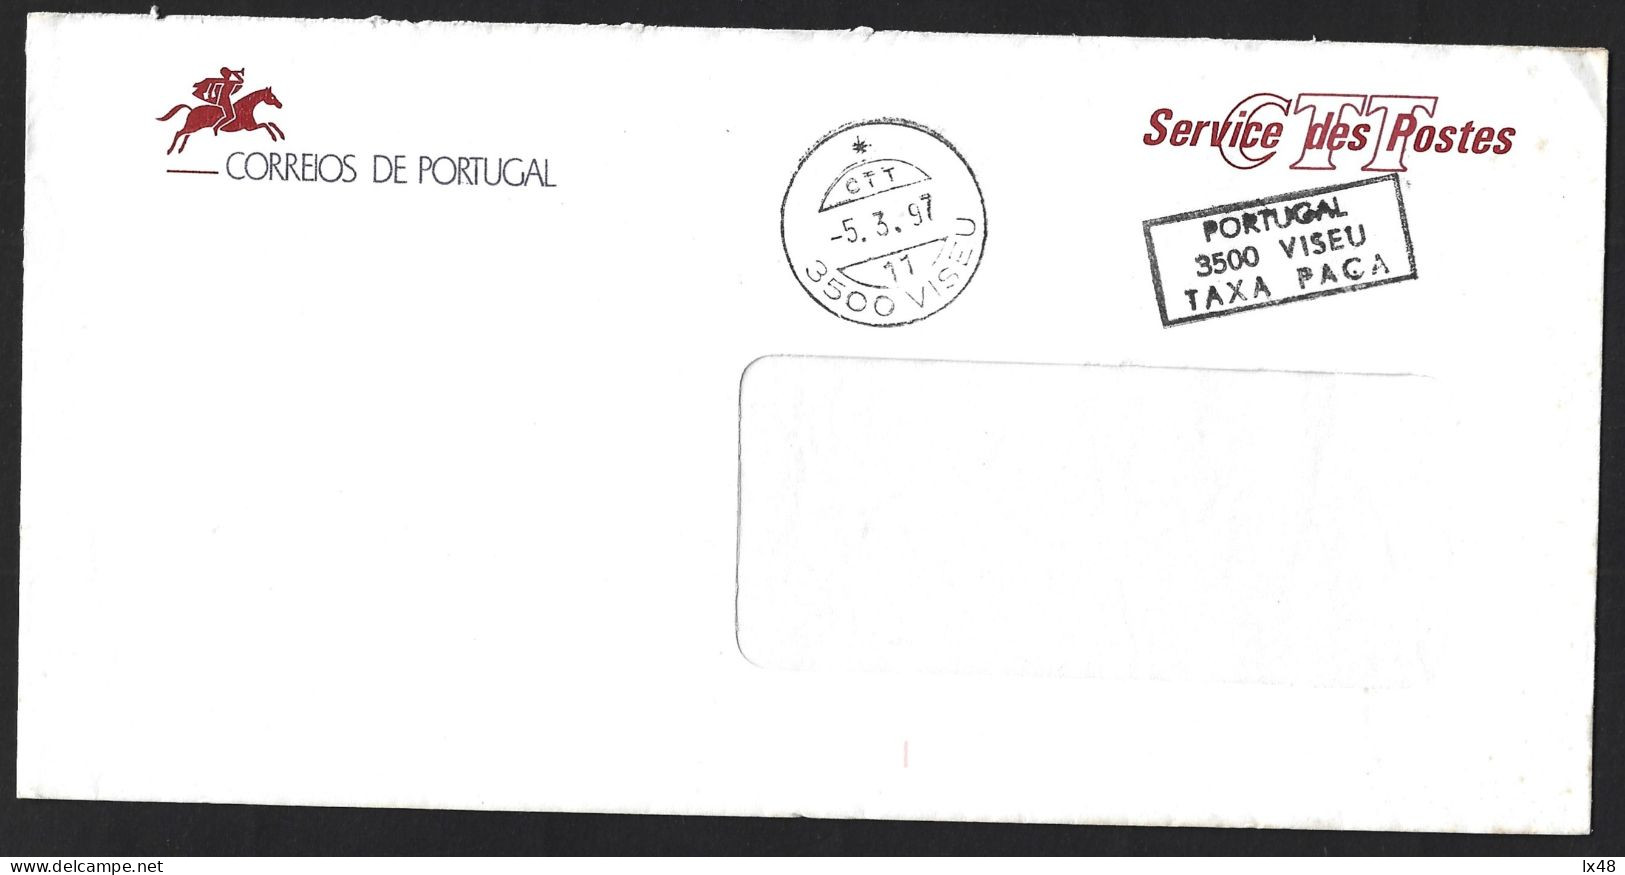 Carta Dos Correios Com Marcas De 'Taxa Paga, Viseu'. Rare. Letter From The Post Office Marked 'Tax Paid, Viseu'. Rare. - Briefe U. Dokumente